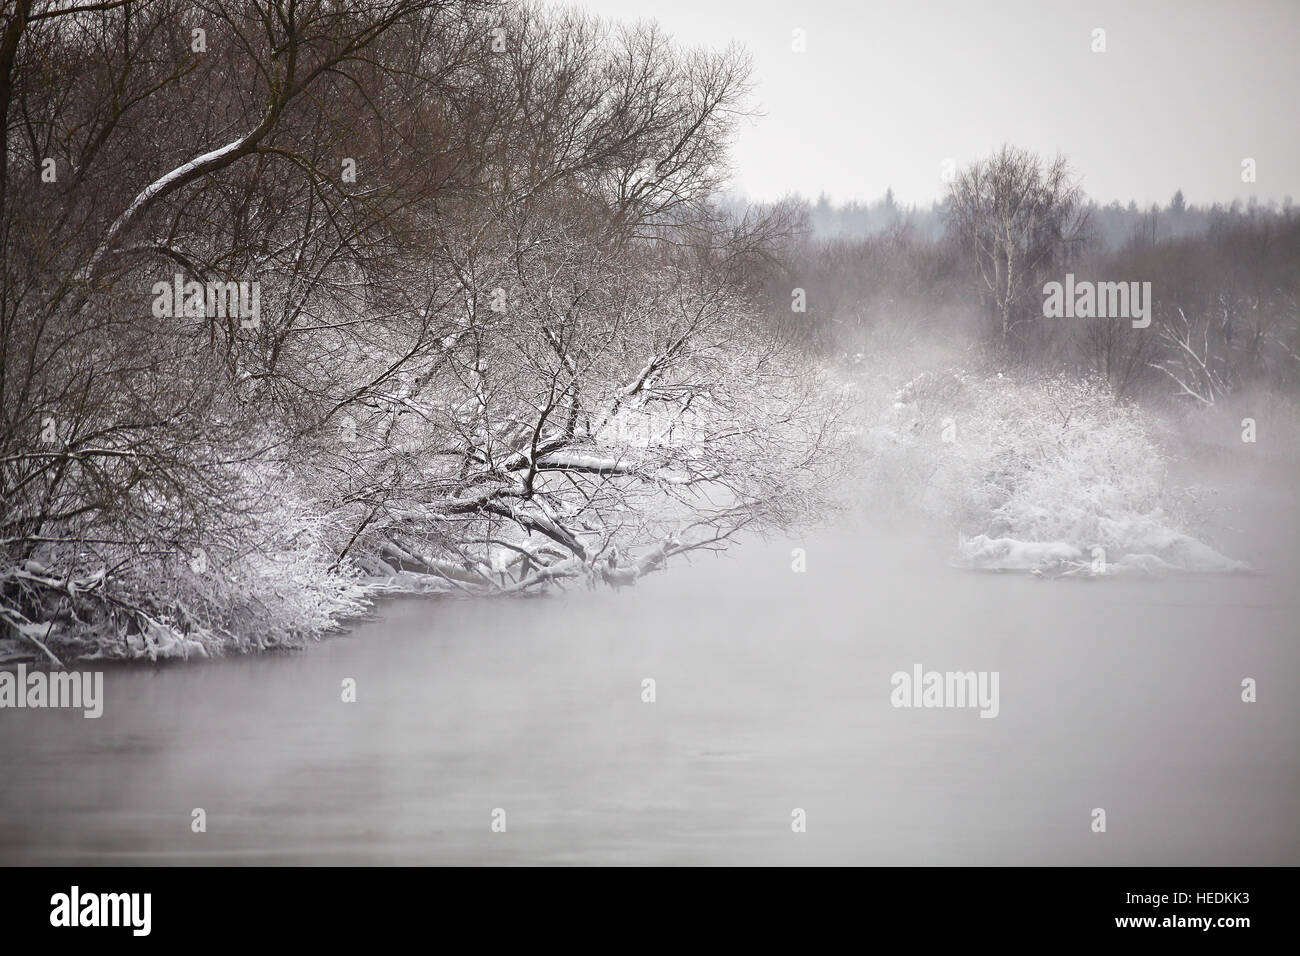 La neige et le givre sur les arbres et arbustes plus misty river. Couvert de neige. Banque D'Images